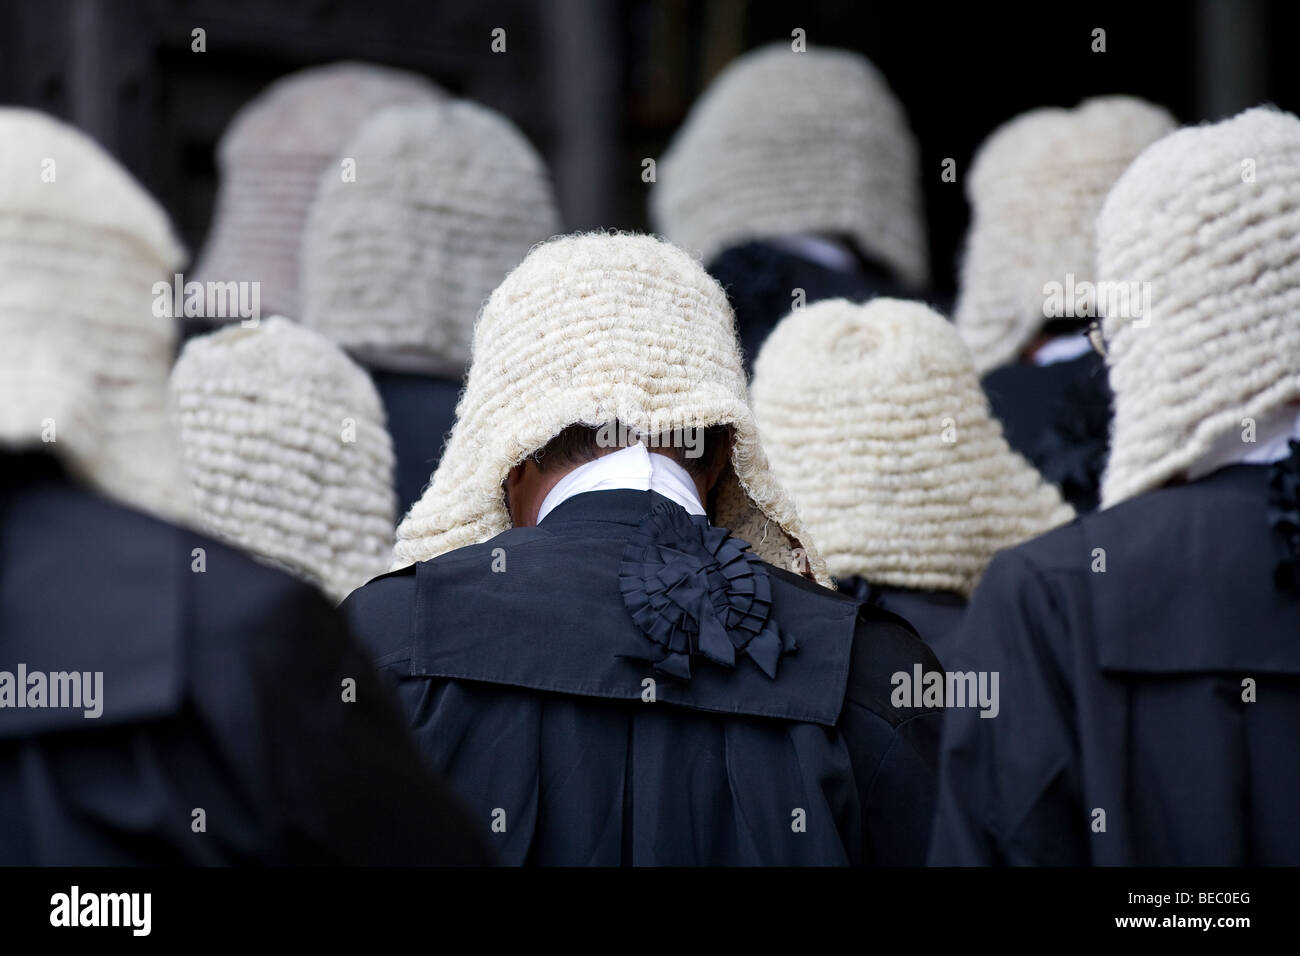 Procesión de los jueces al servicio de la Abadía de Westminster en Londres Foto de stock